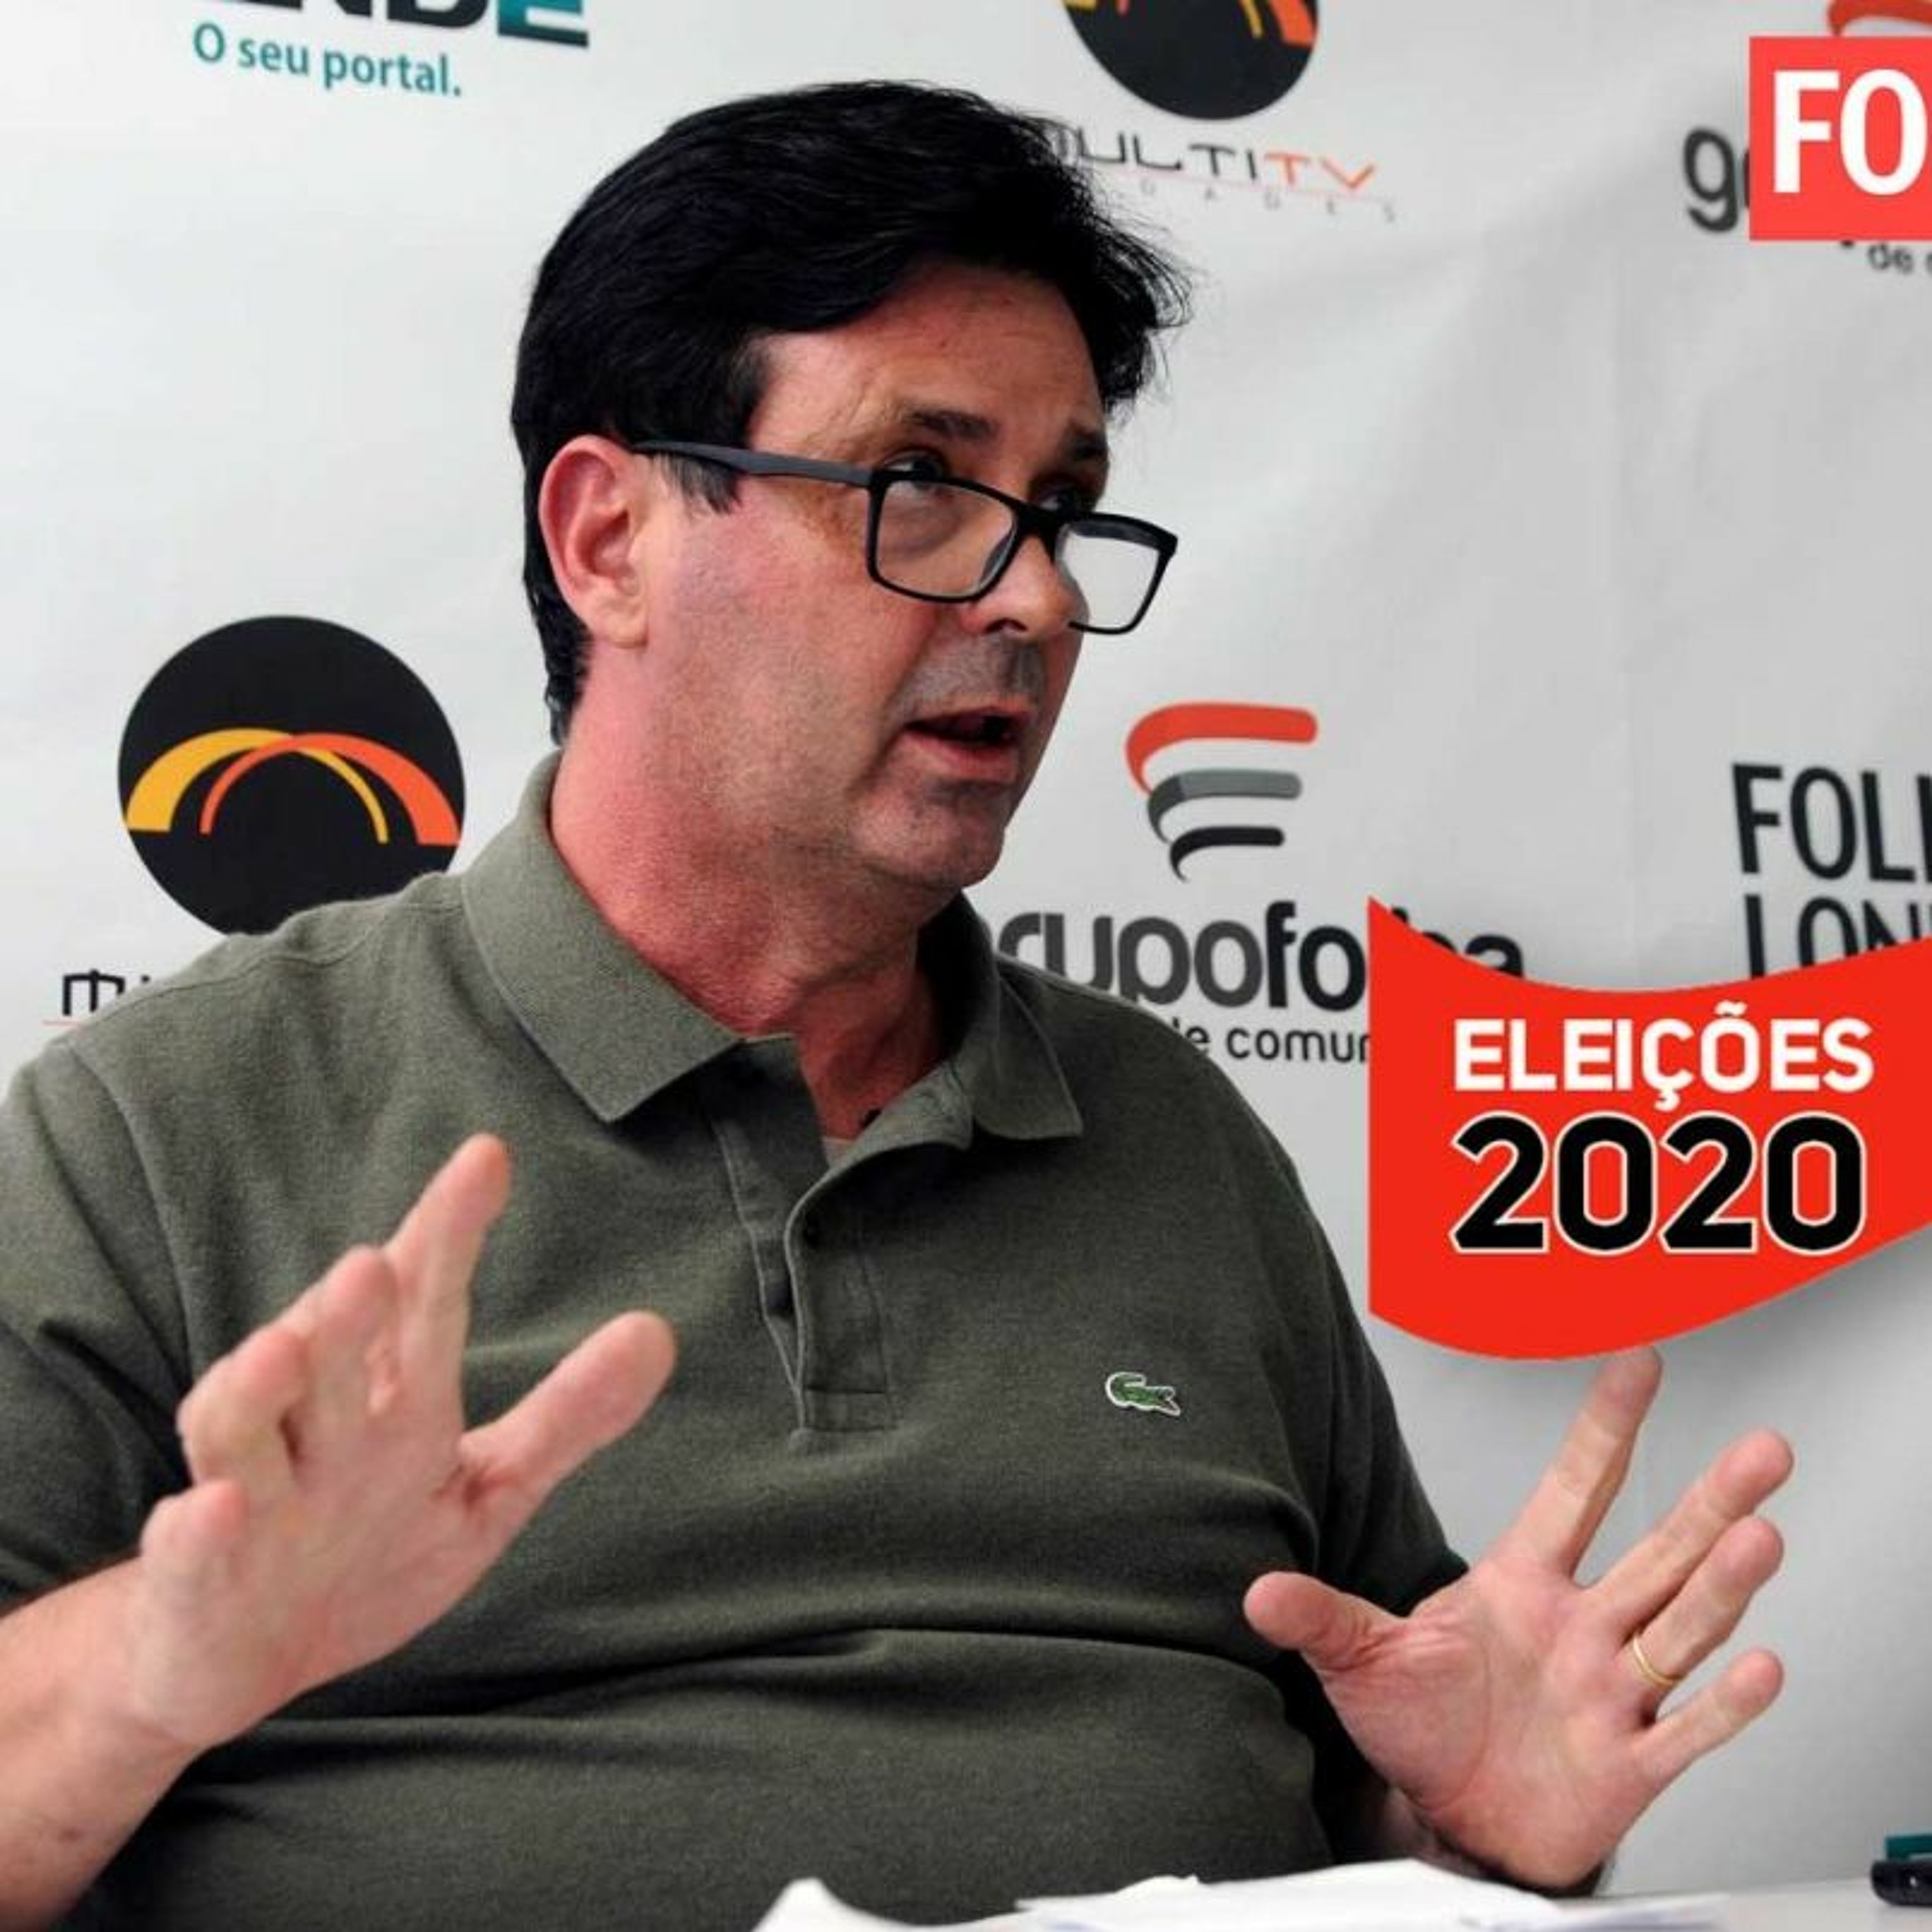 ELEIÇÕES MUNICIPAIS 2020 | Márcio Stamm (Podemos)